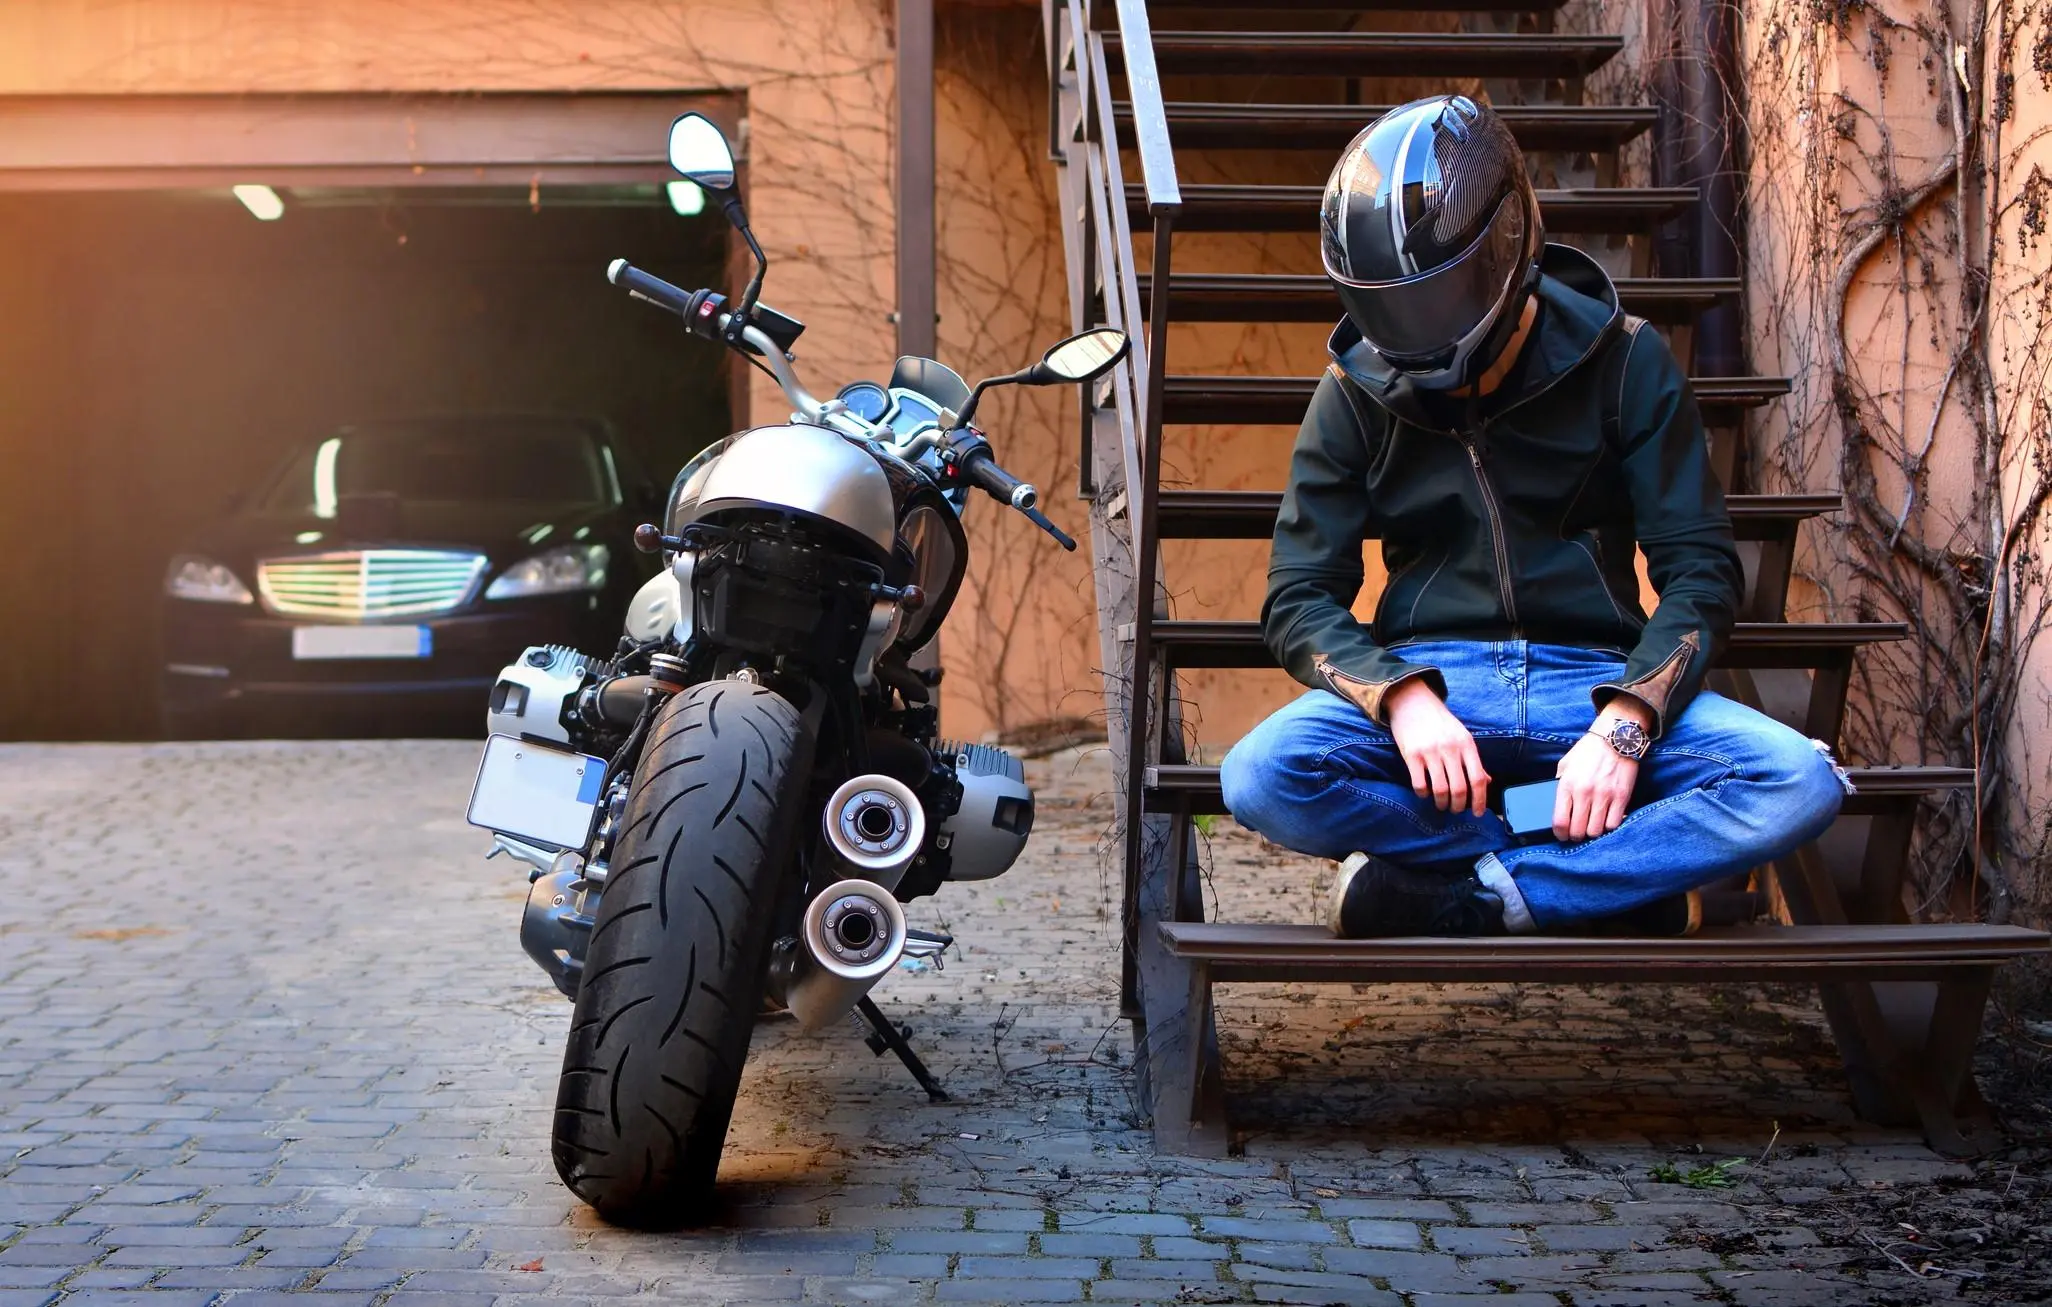 fallas electricas en motos - Qué pasa cuando una moto no arranca